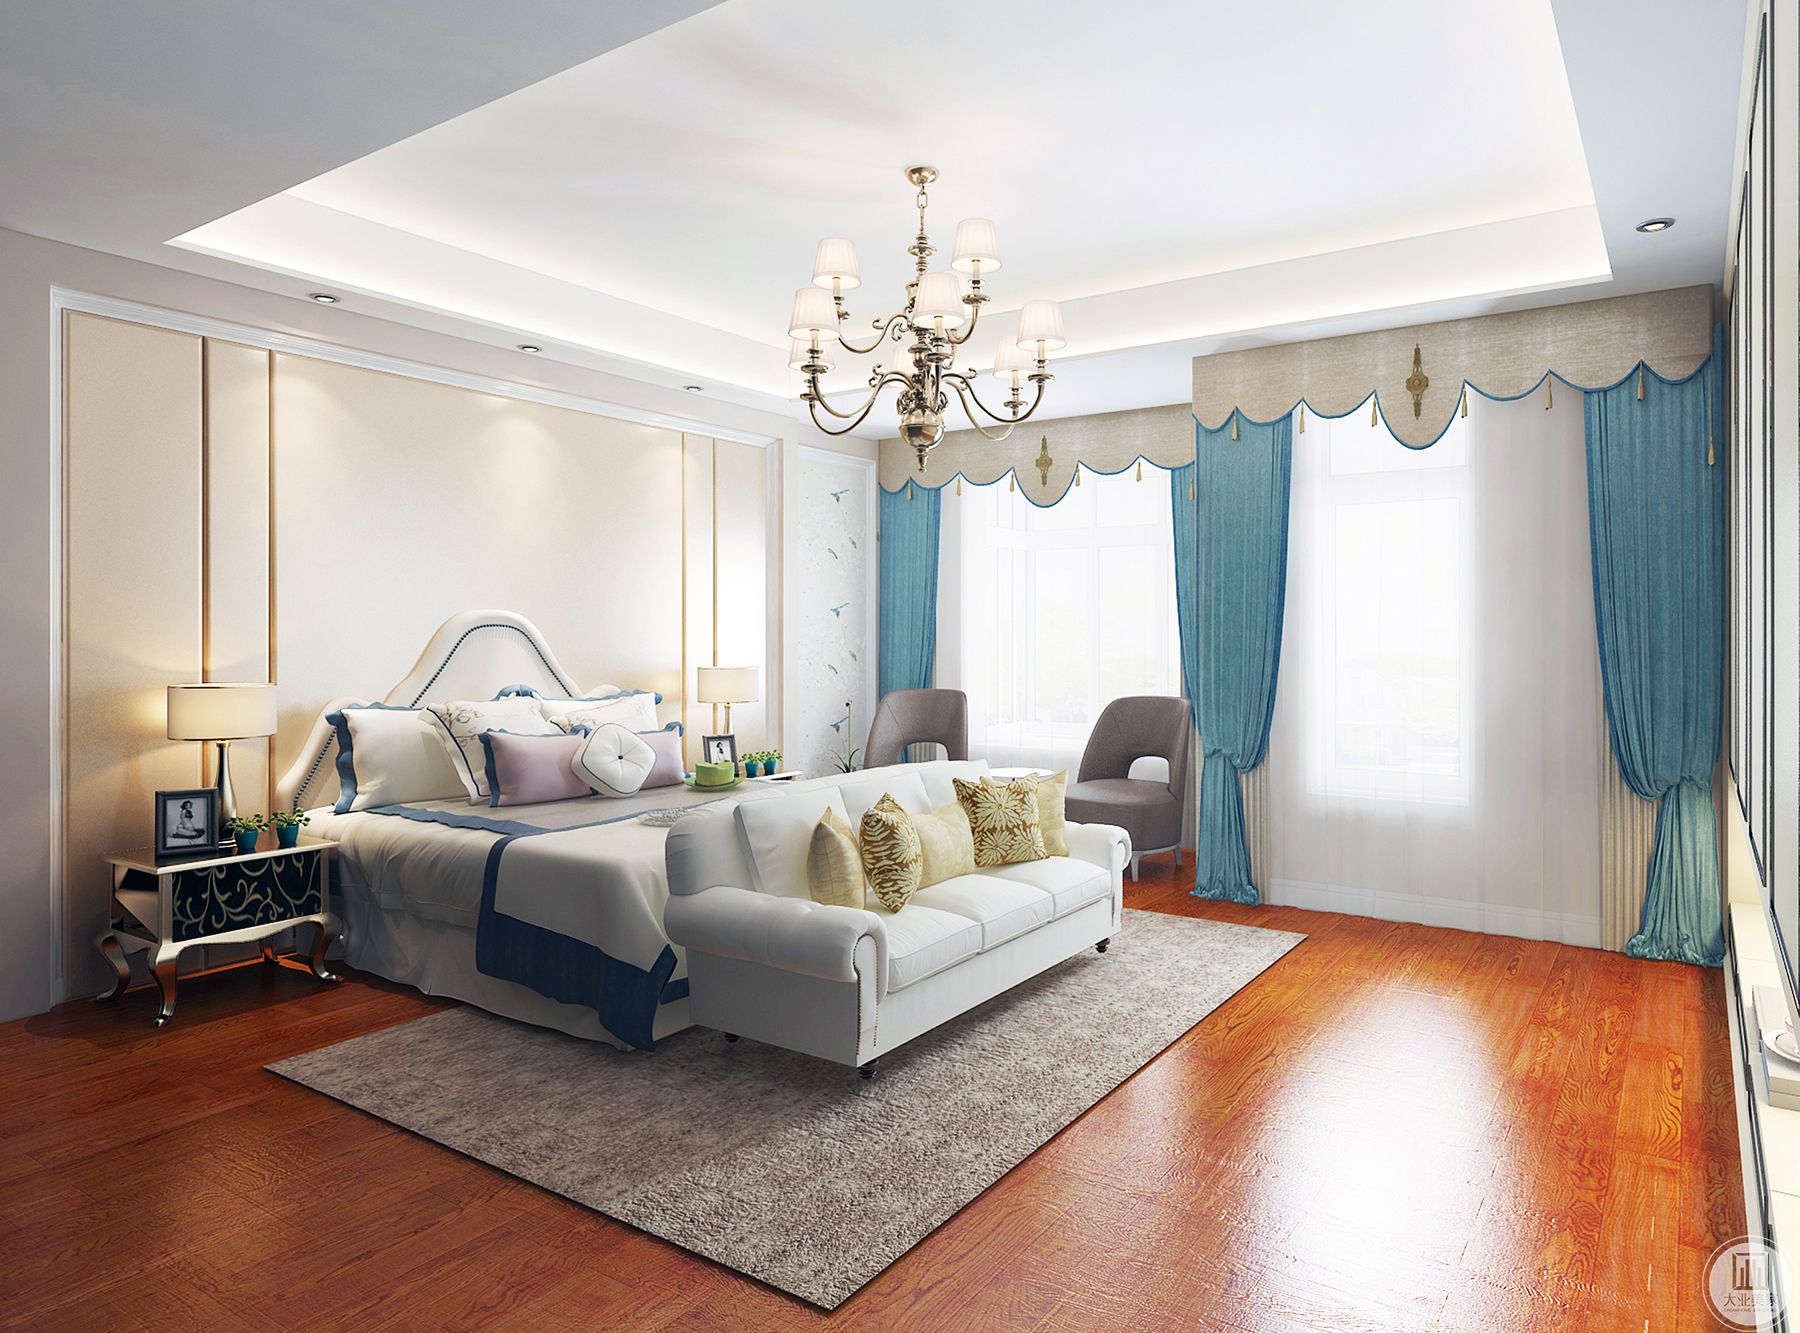 轻松宁静的白色调。简单的木色地板和欧式床头柜使整个空间温暖。